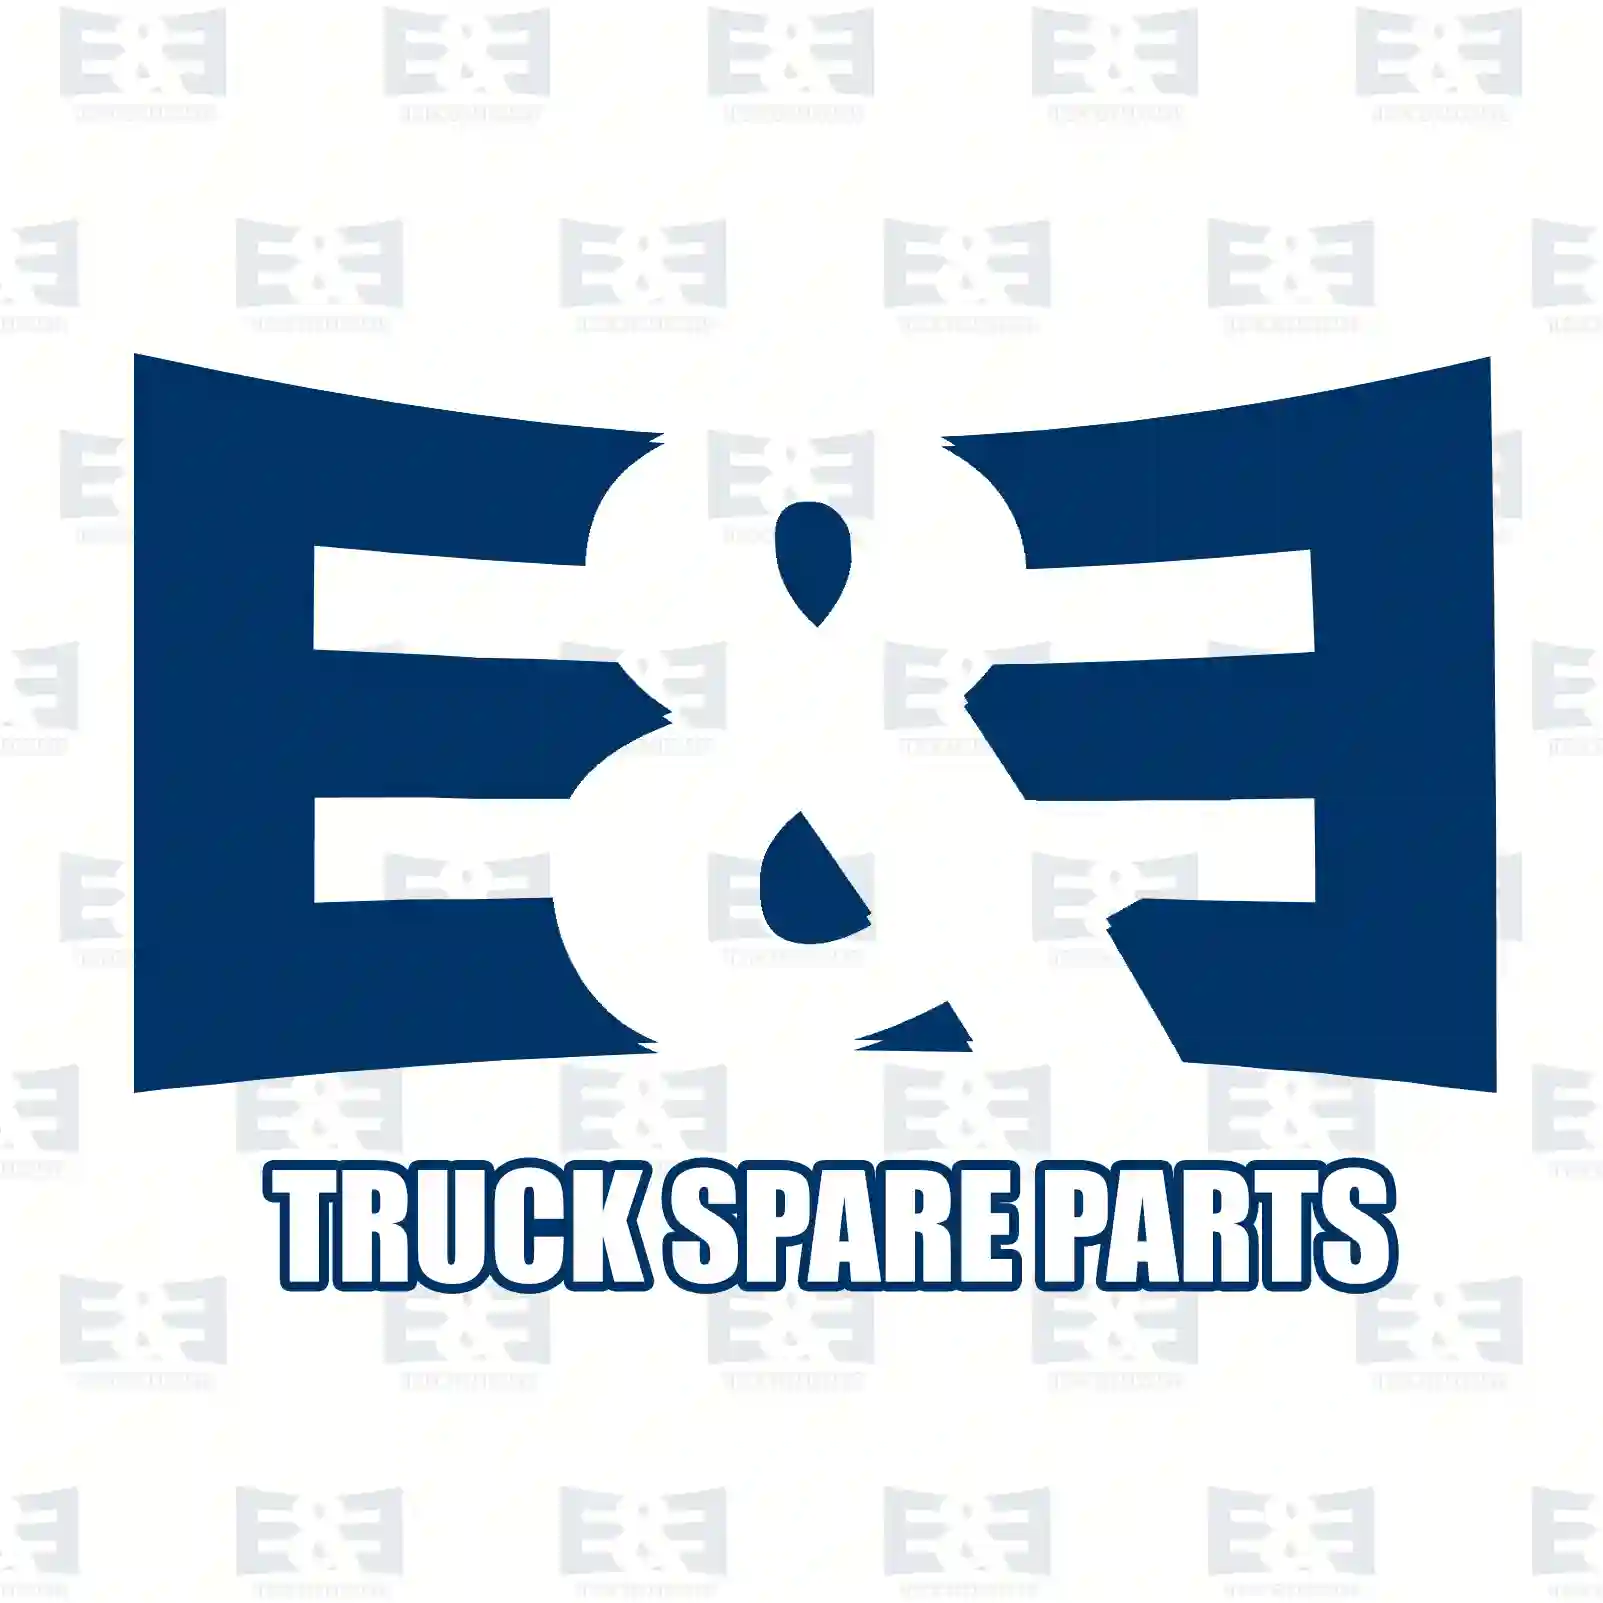  Ball bearing, center bearing || E&E Truck Spare Parts | Truck Spare Parts, Auotomotive Spare Parts